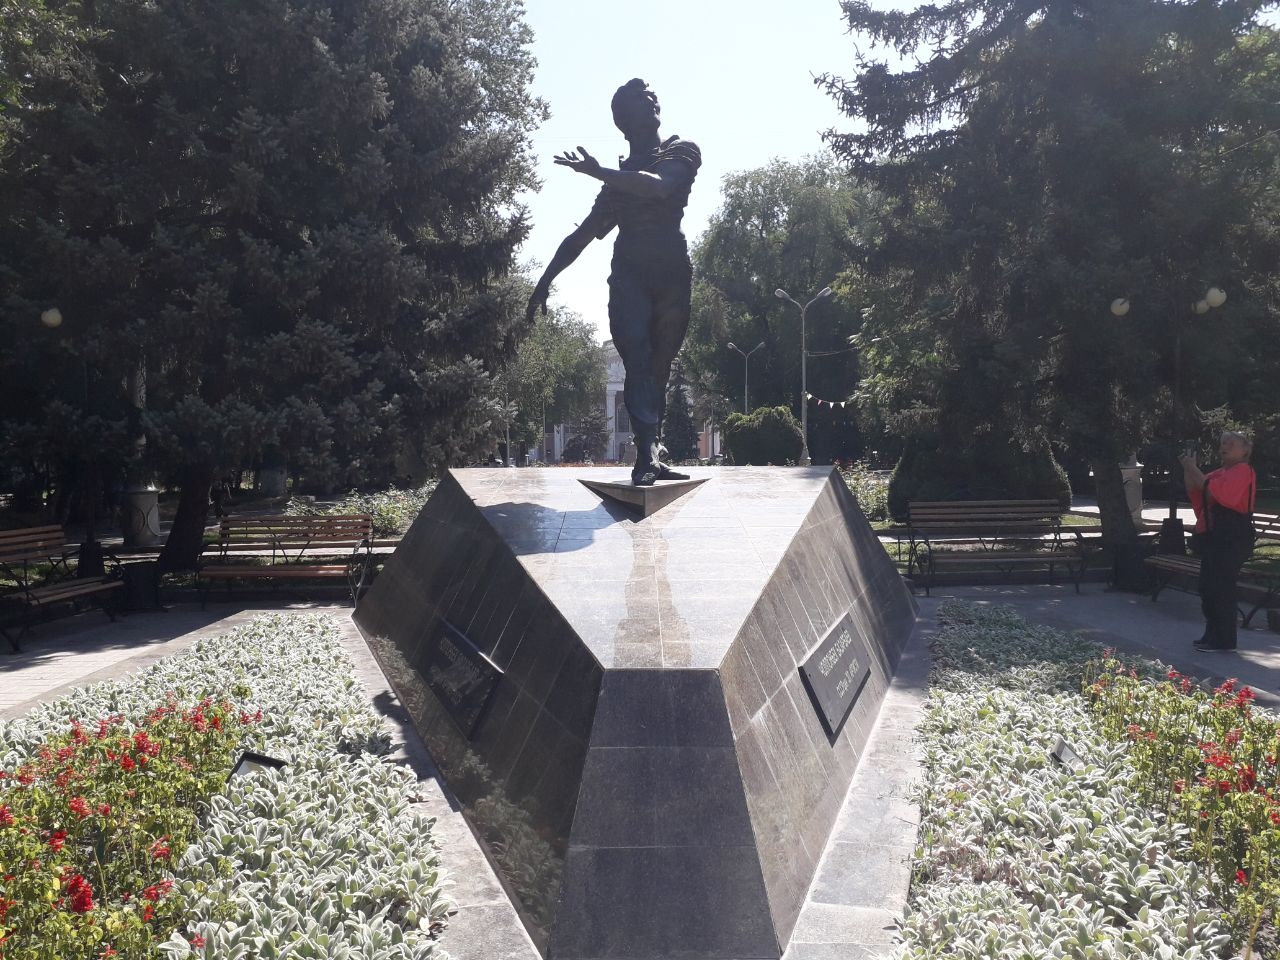 Памятник Чолпонбеку Базарбаеву / Cholponbek Bazarbayev Monument